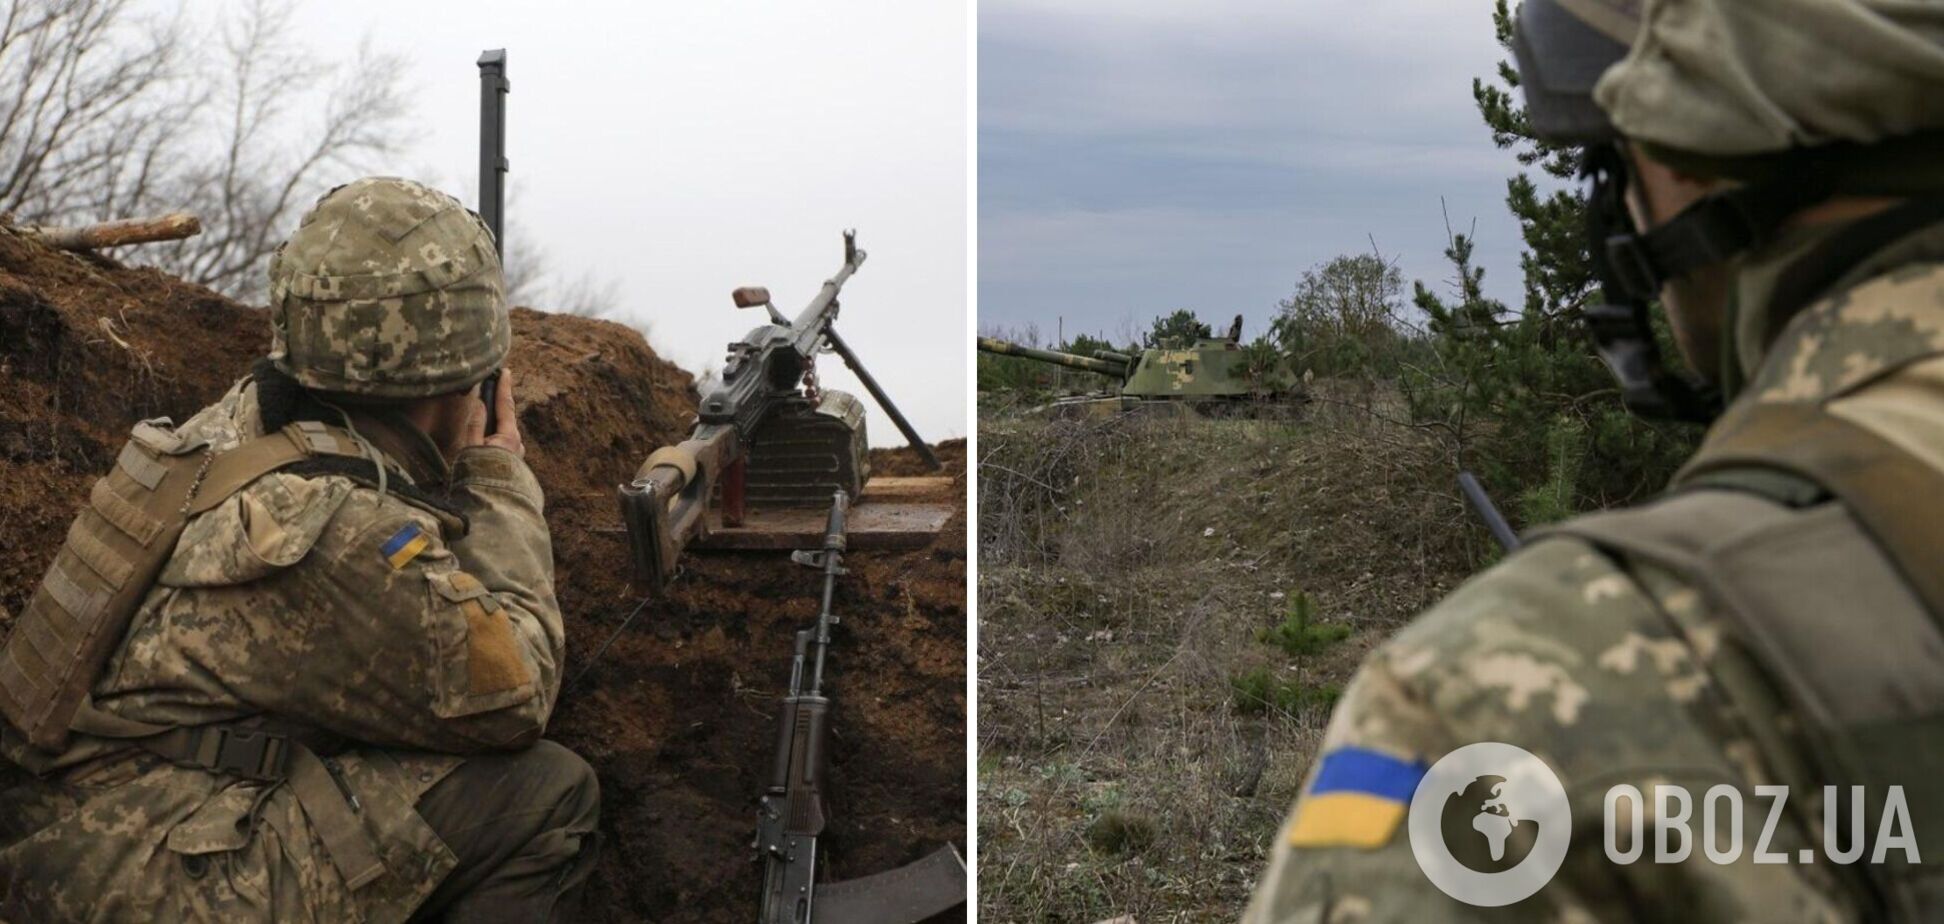 Наемники РФ ударили по ВСУ на Донбассе из запрещенного оружия